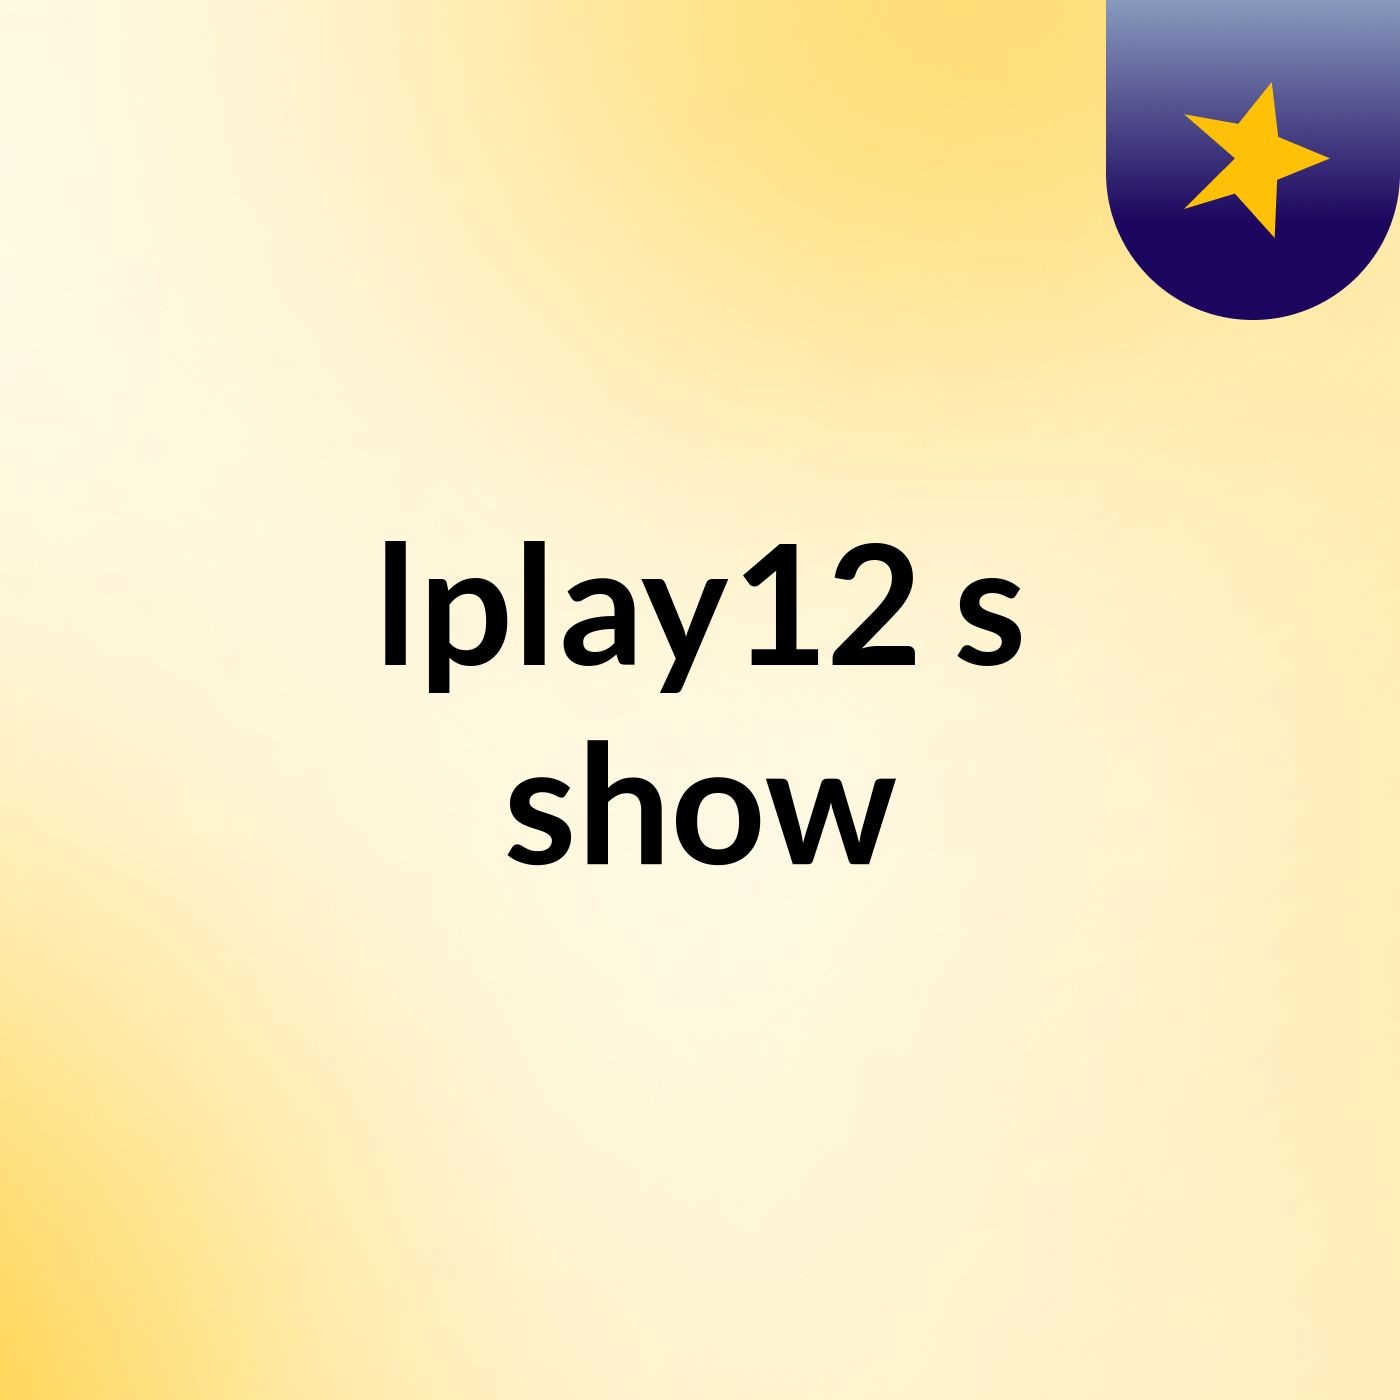 lplay12's show